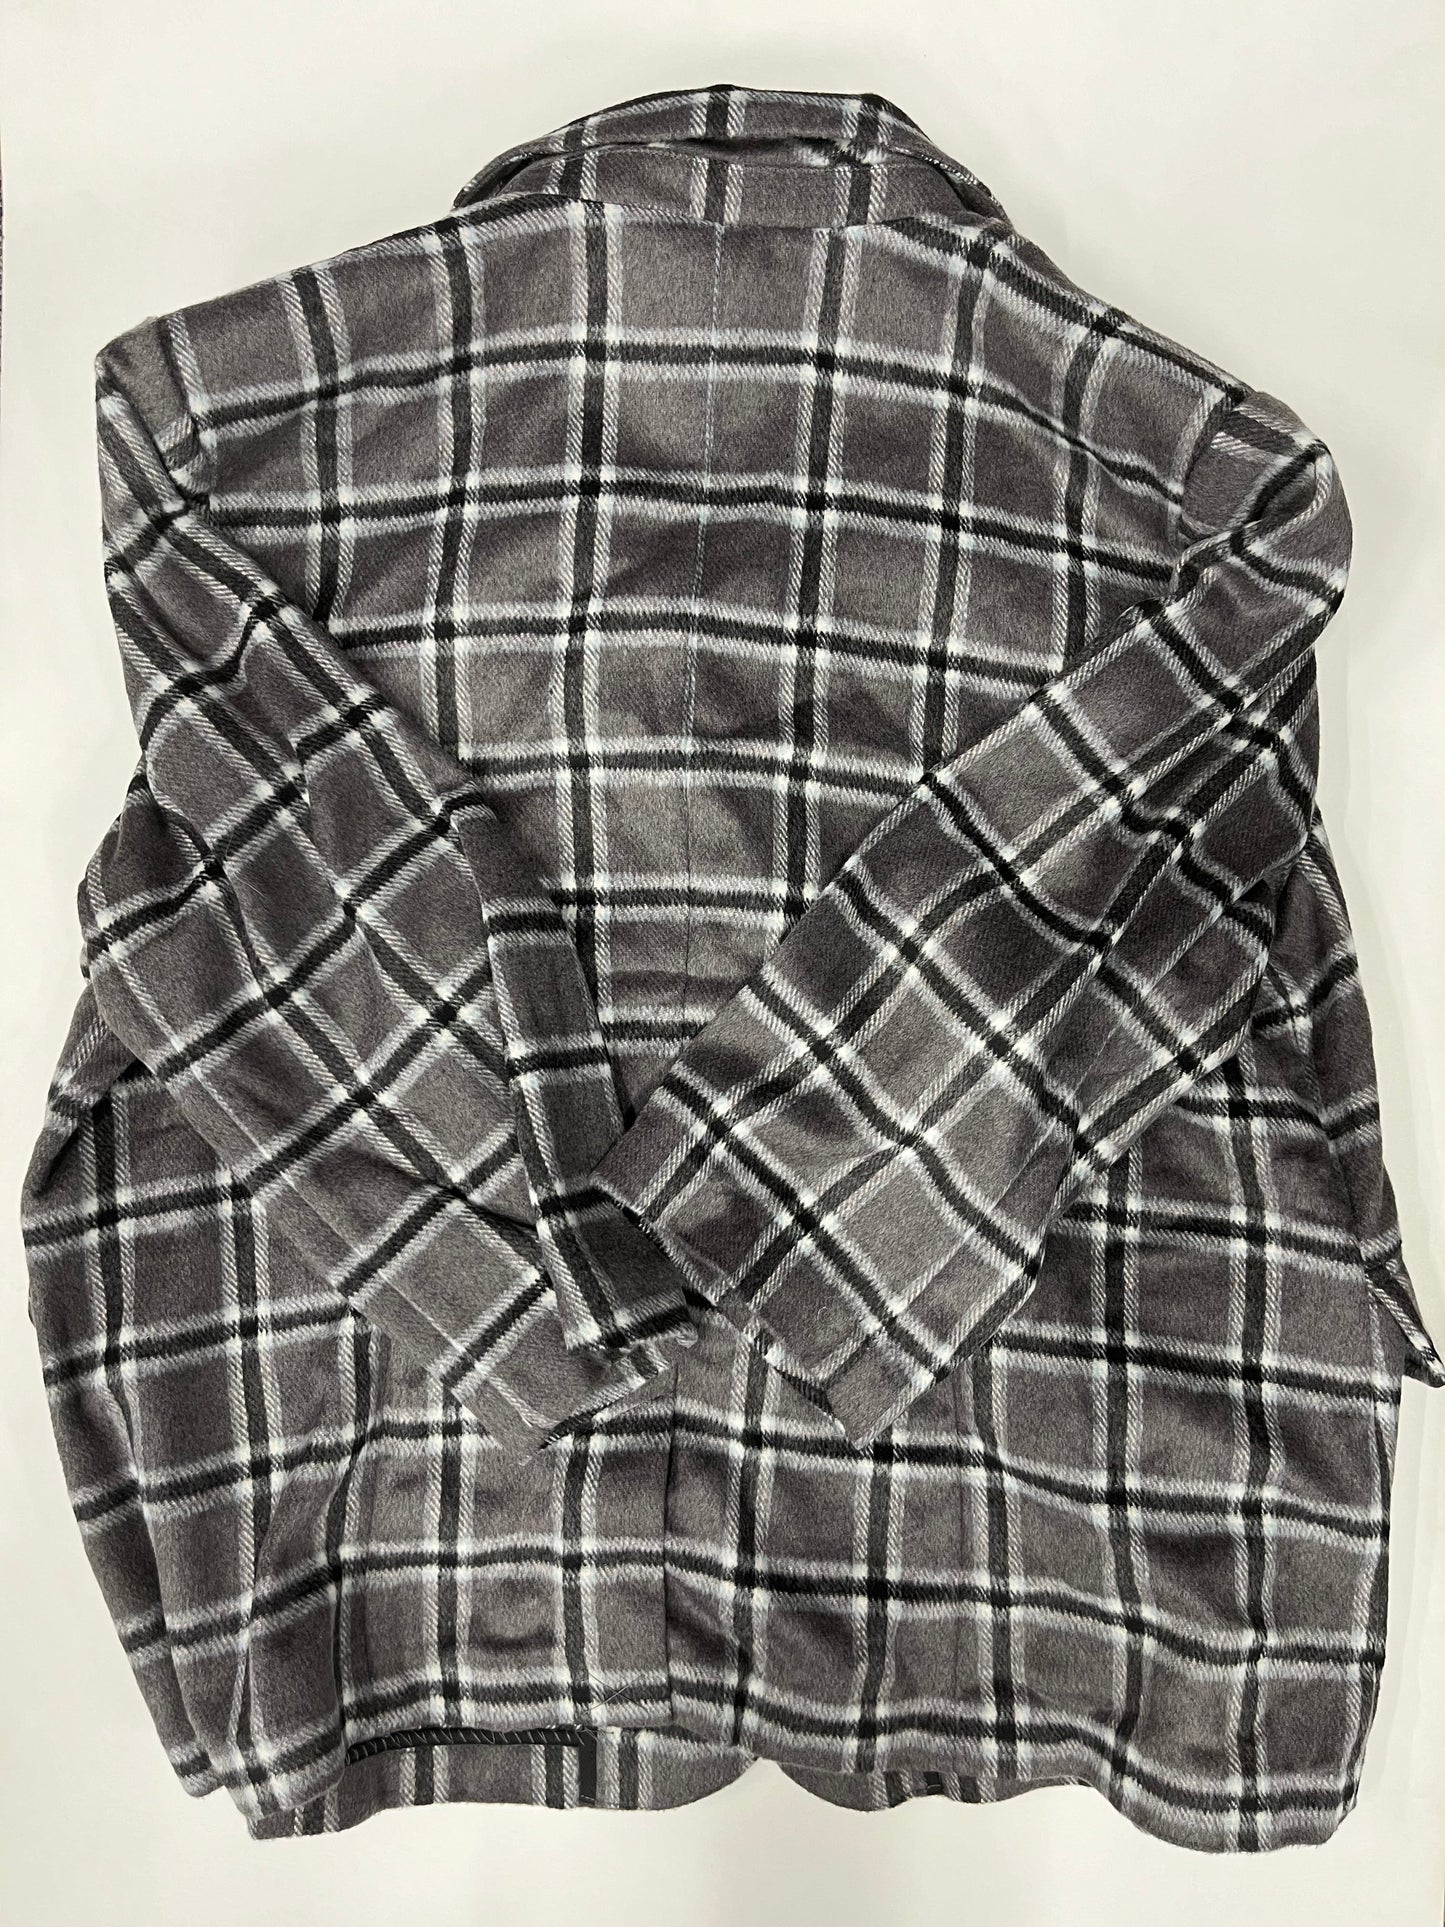 Blazer Jacket By Laurie Felt  Size: 1x